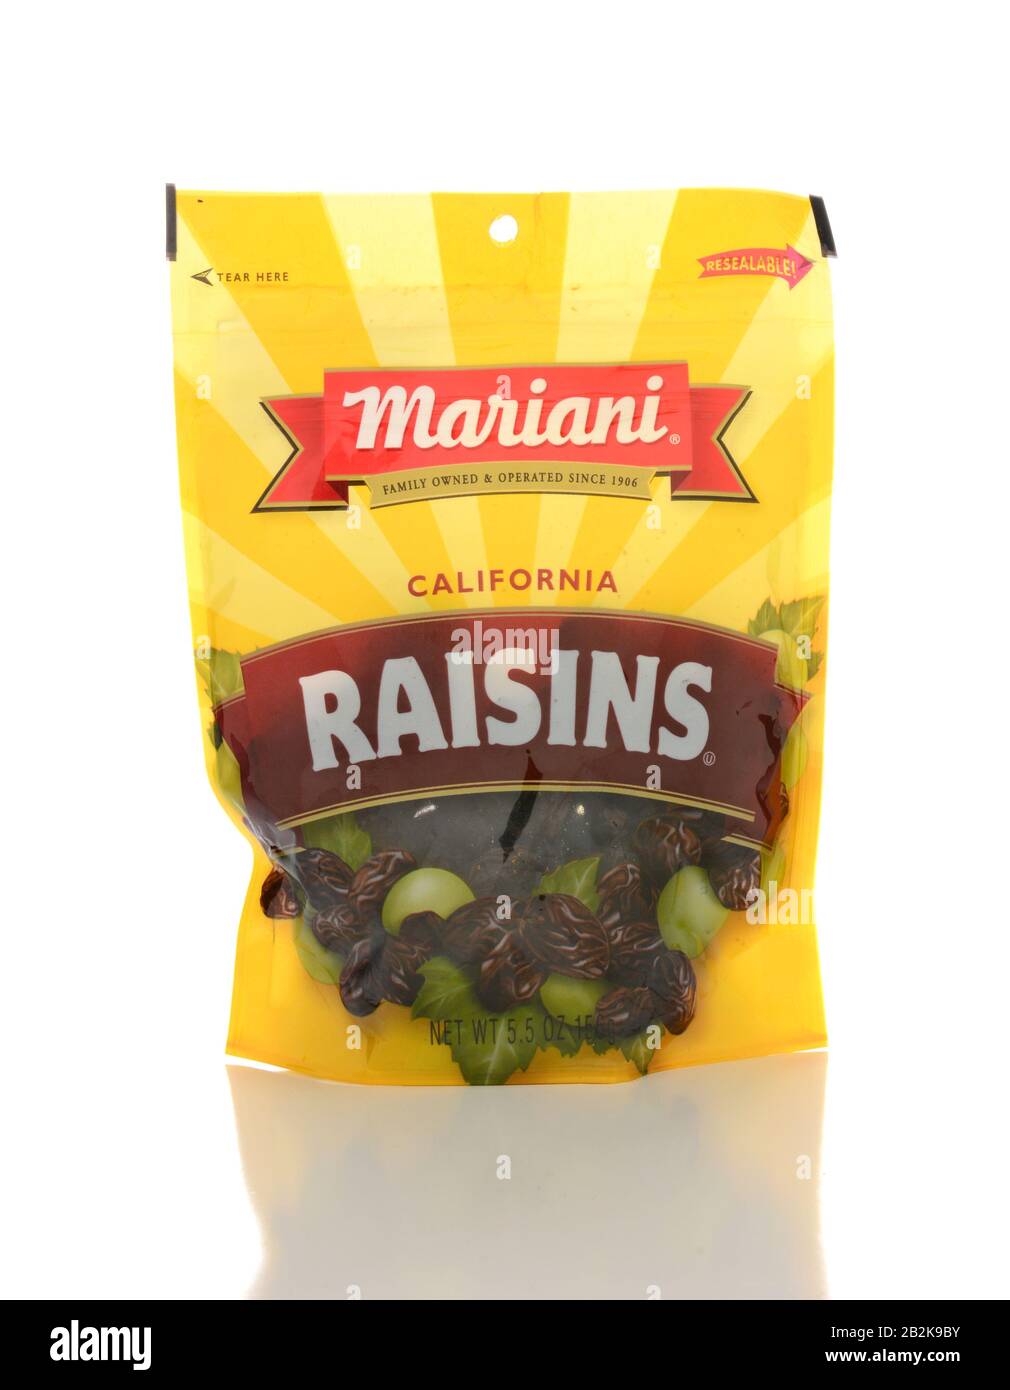 Irvine, CA - 23 DE ENERO de 2015: Un paquete de Mariani California Raisins. La Mariani Packing Company ha estado proporcionando frutas secas por más de 100 años Foto de stock